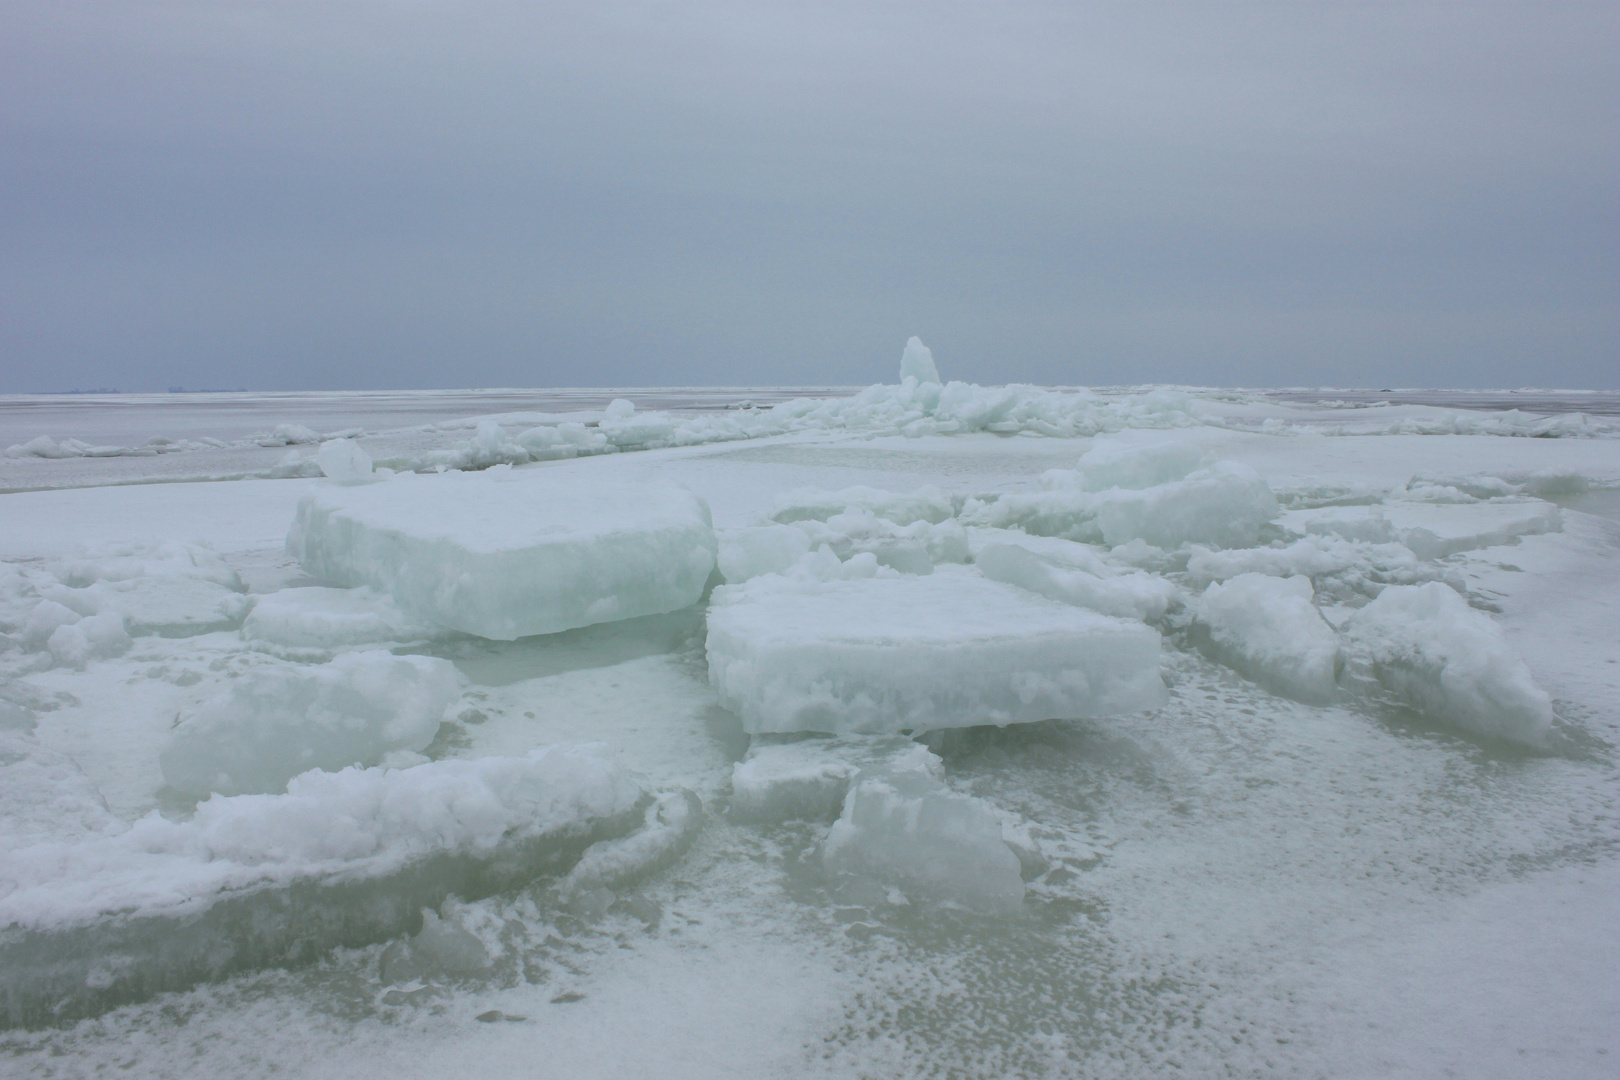 Arktis auf dem Greifswalder Bodden